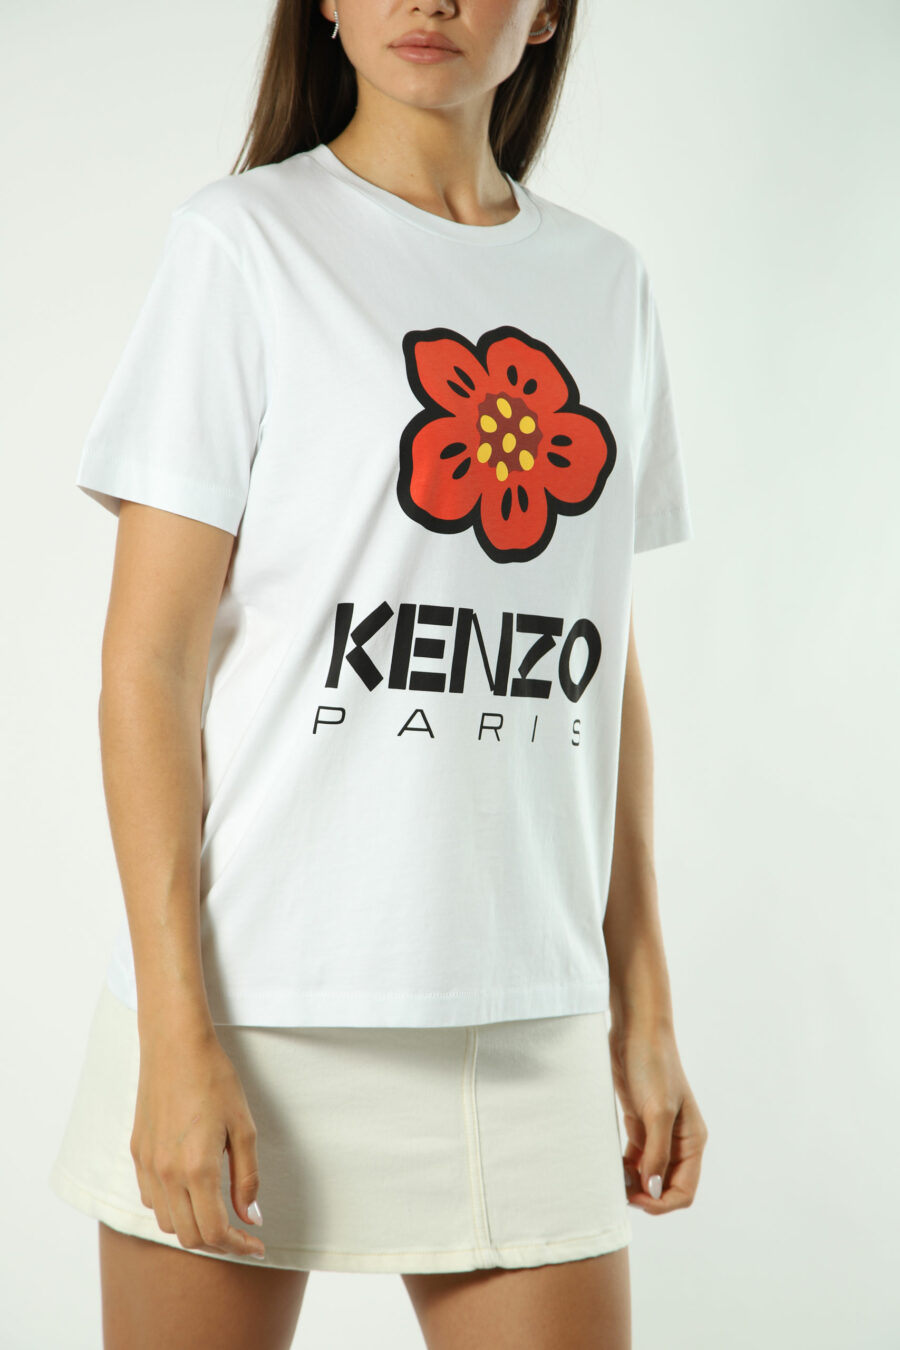 Weißes T-Shirt mit orangefarbenem Blumen-Maxilogo - Fotos 1382